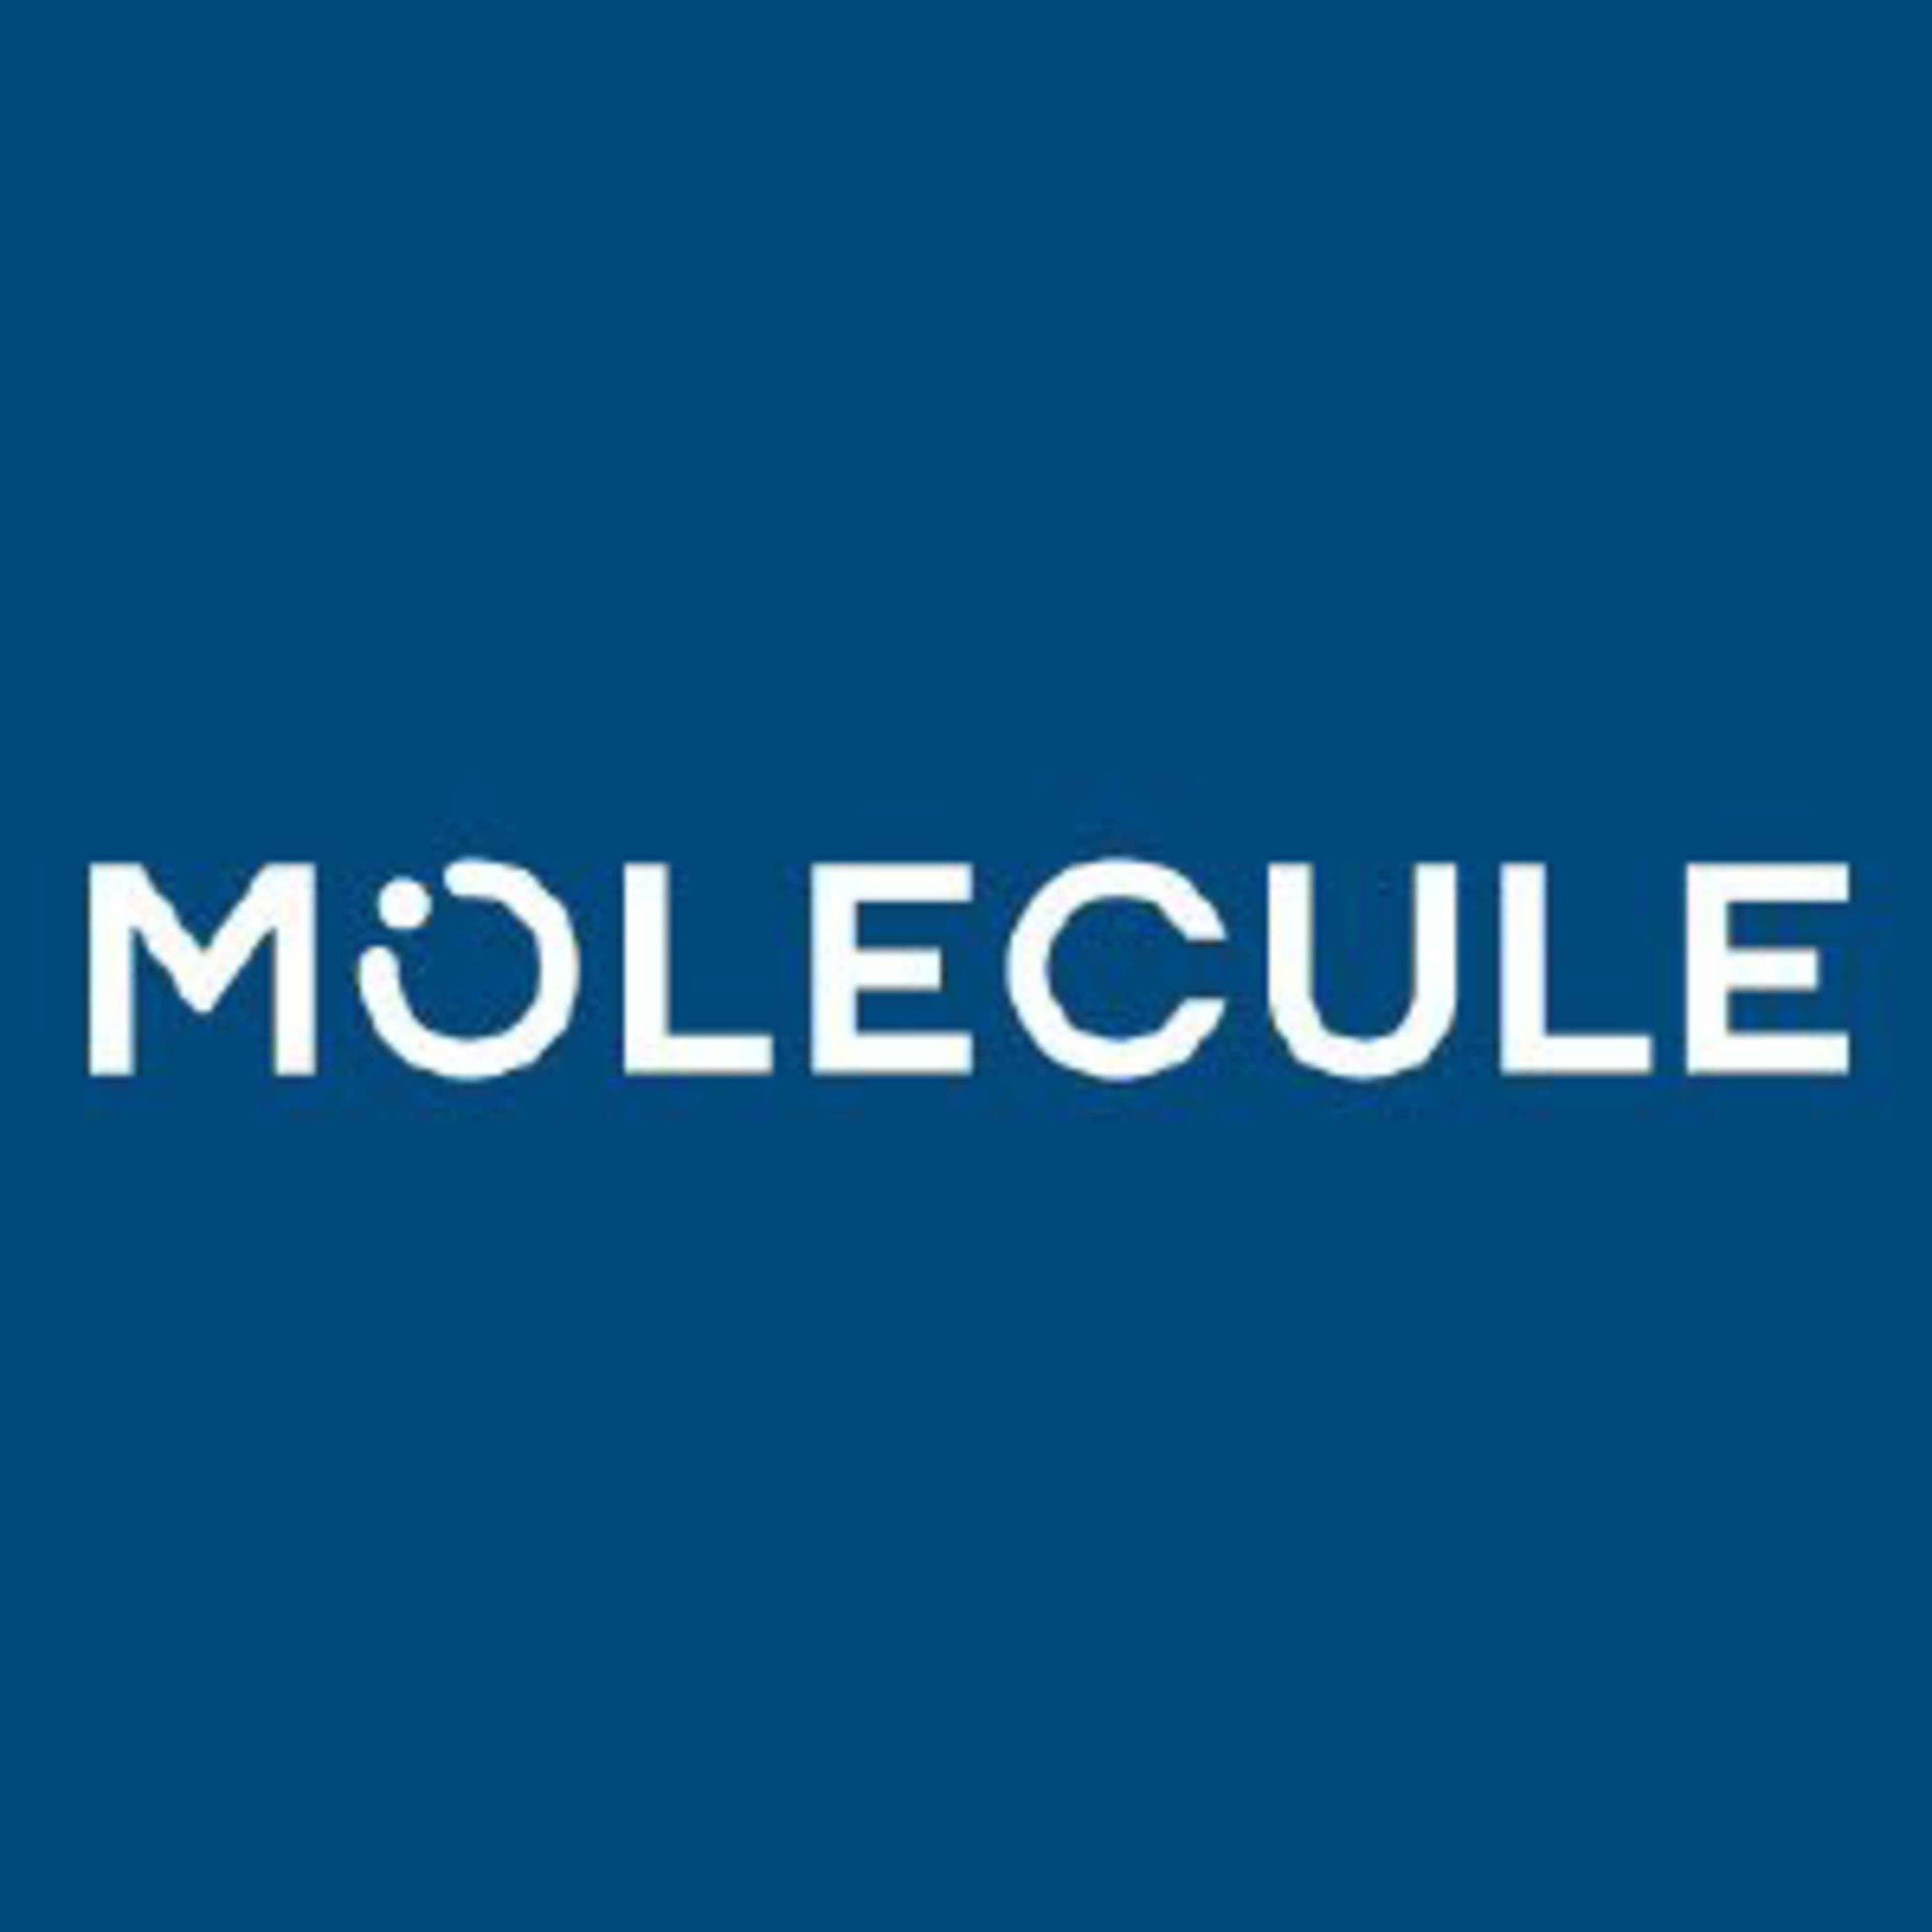 MoleculeCode